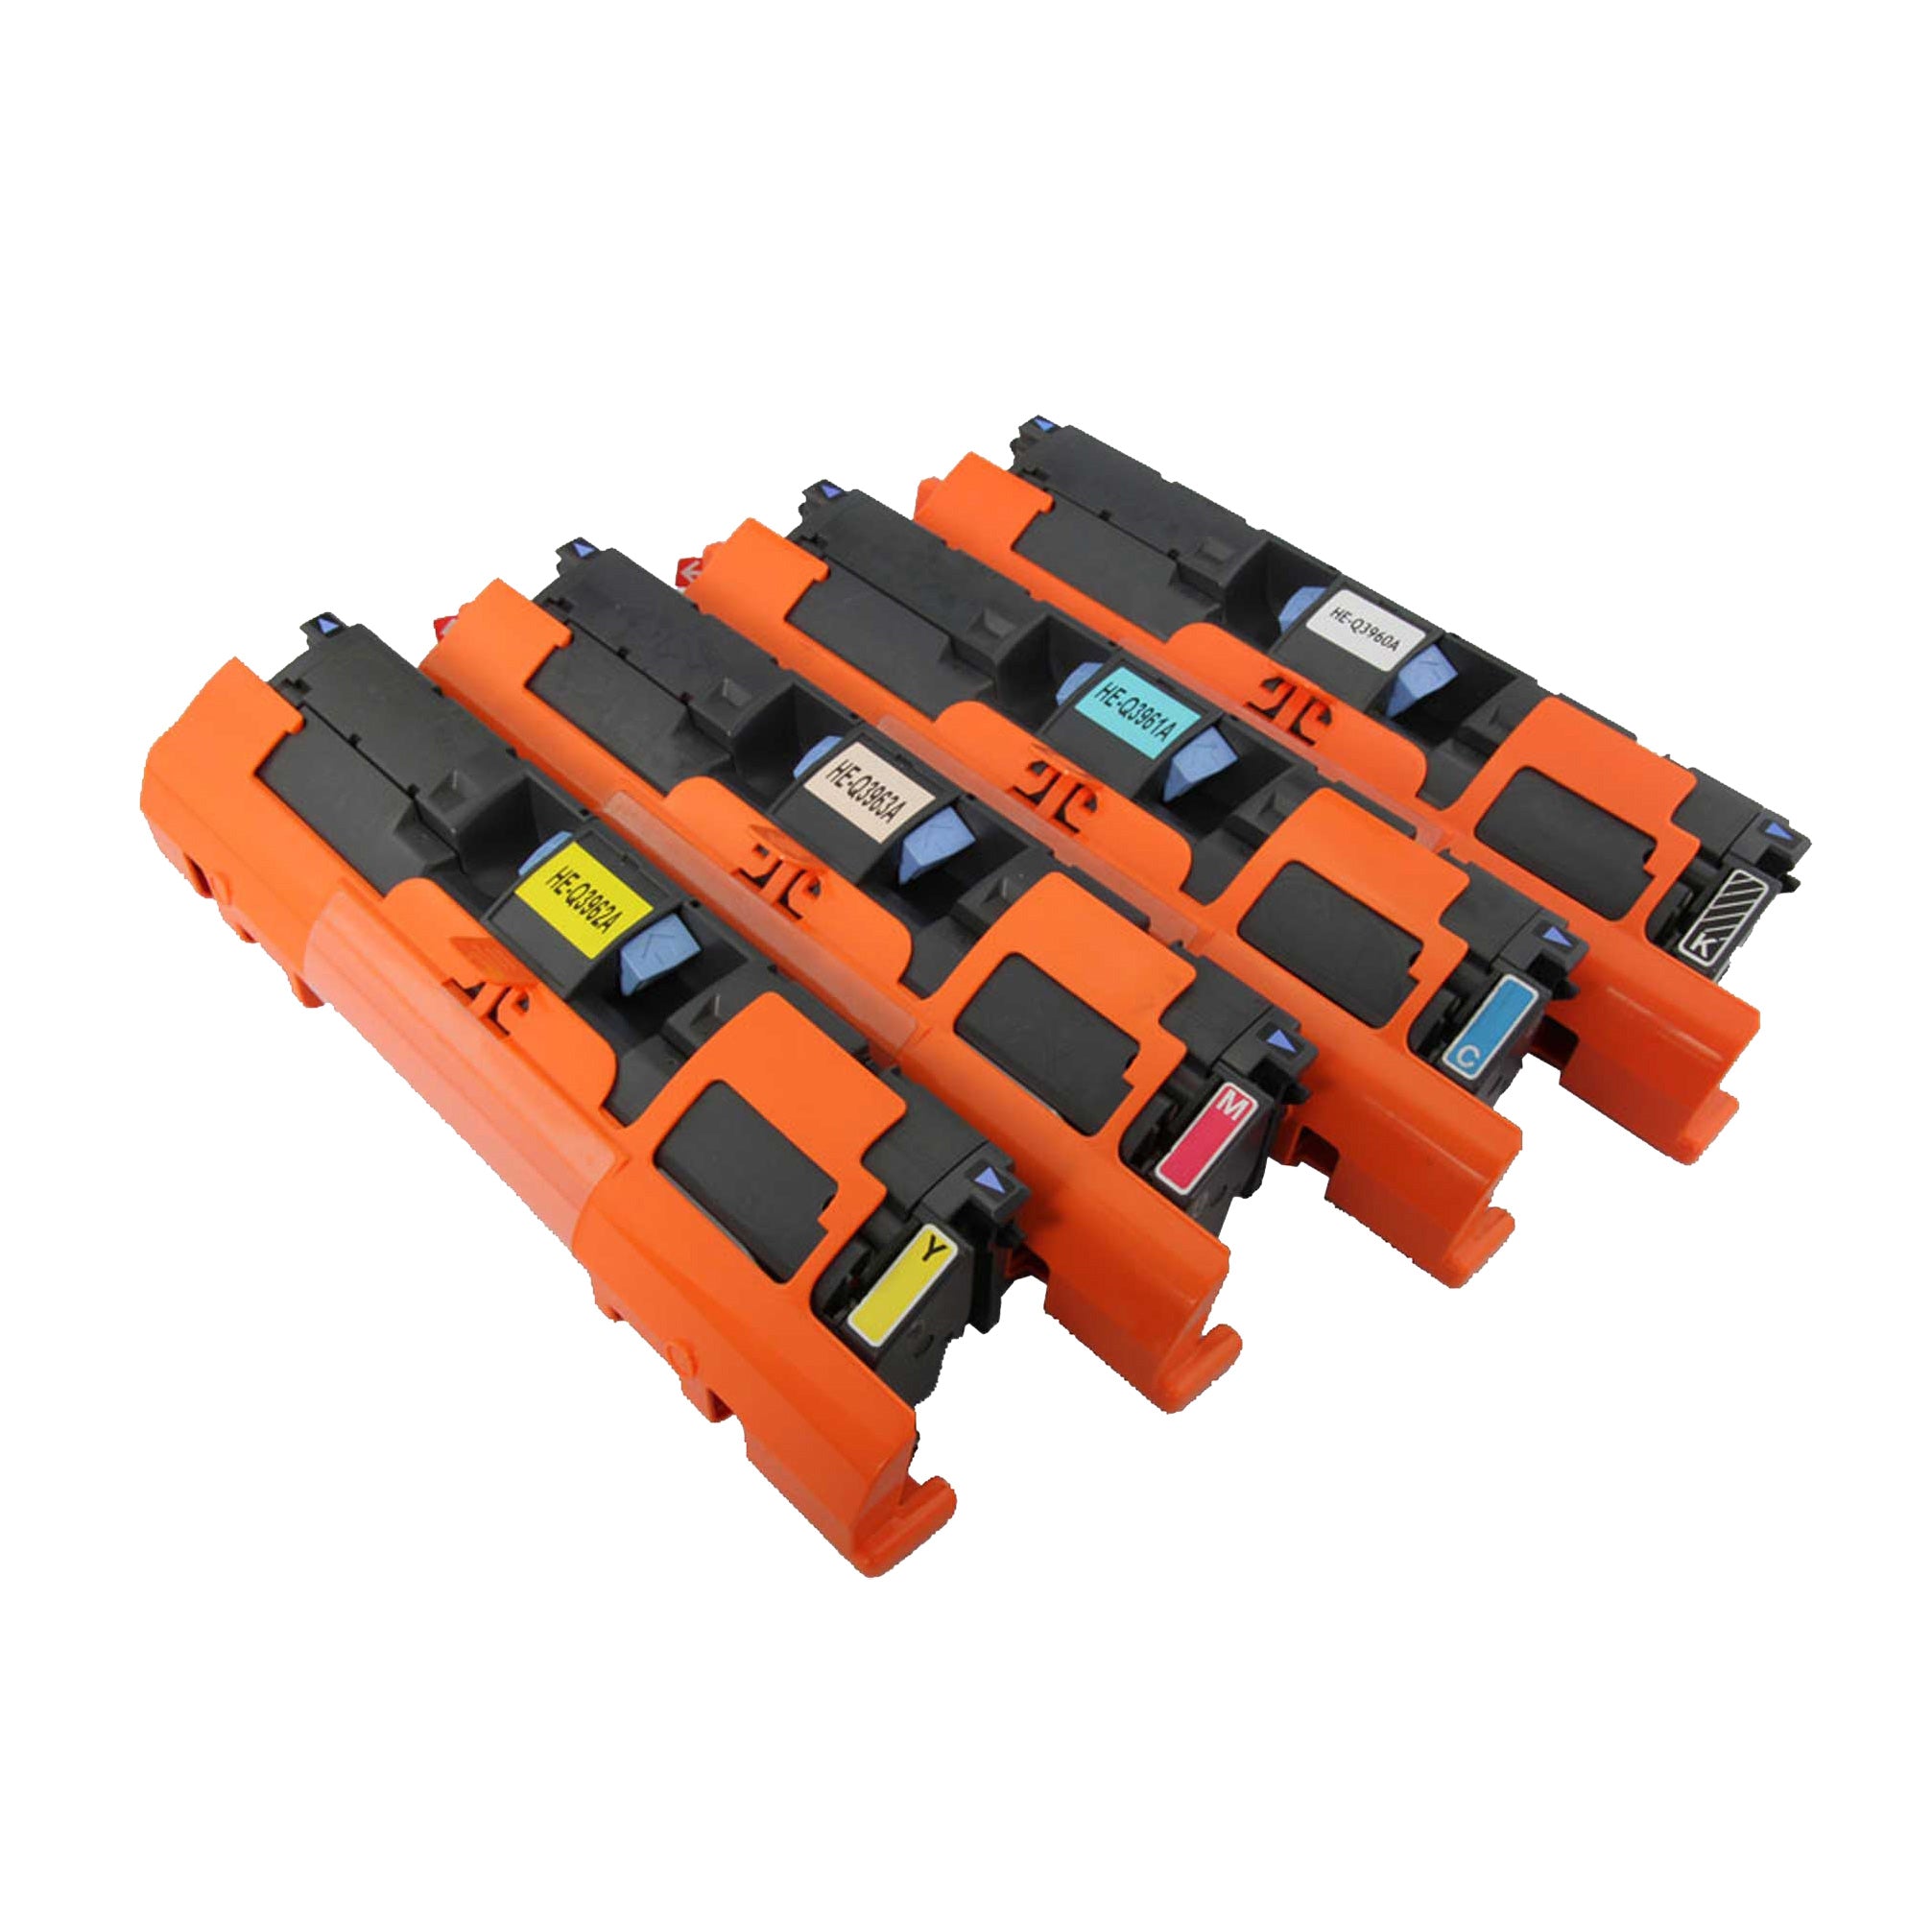 4x Compatible HP Q3960A, Q3961A, Q3962A, Q3963A ( 122A ) Toner Cartridges (BK+C+M+Y)